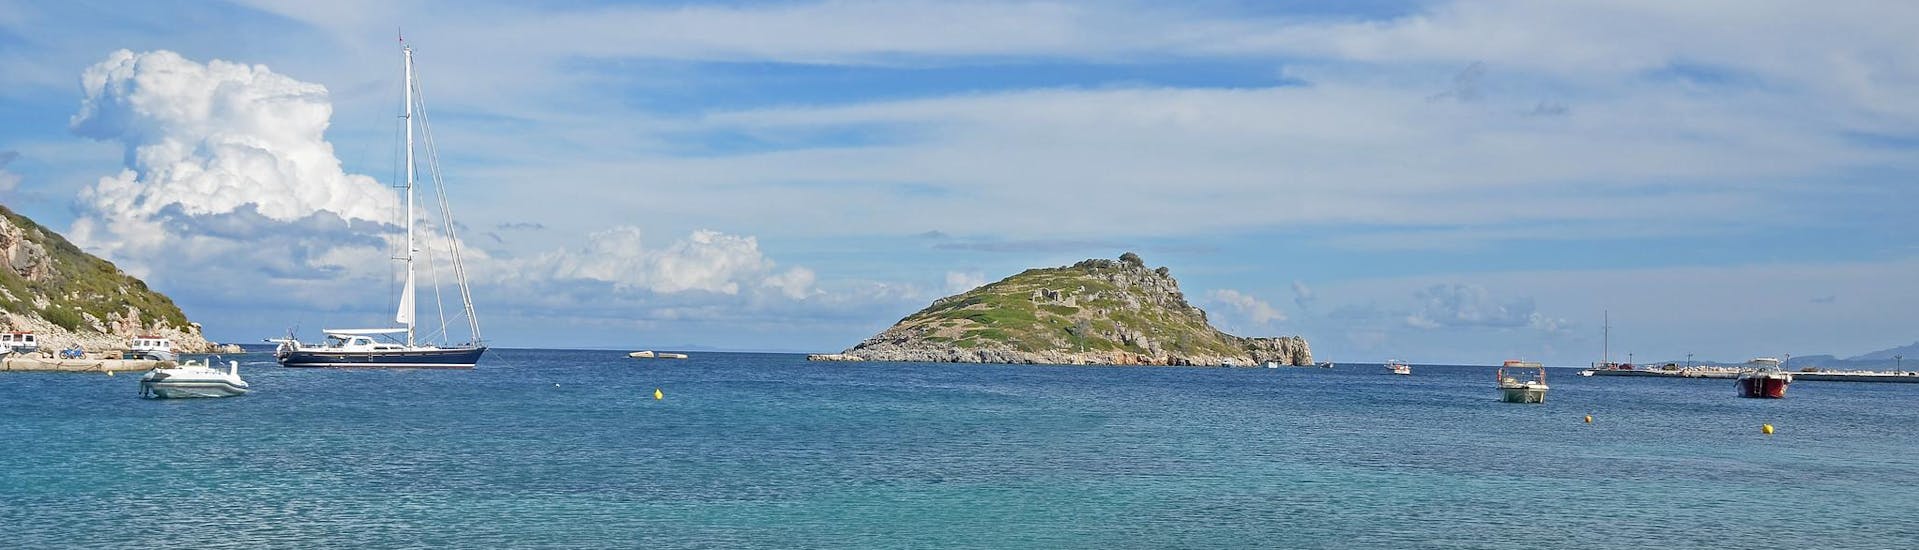 De haven van Agios Nikolaos in Zakynthos, een vertrekpunt voor boottochten op de Ionische Eilanden.